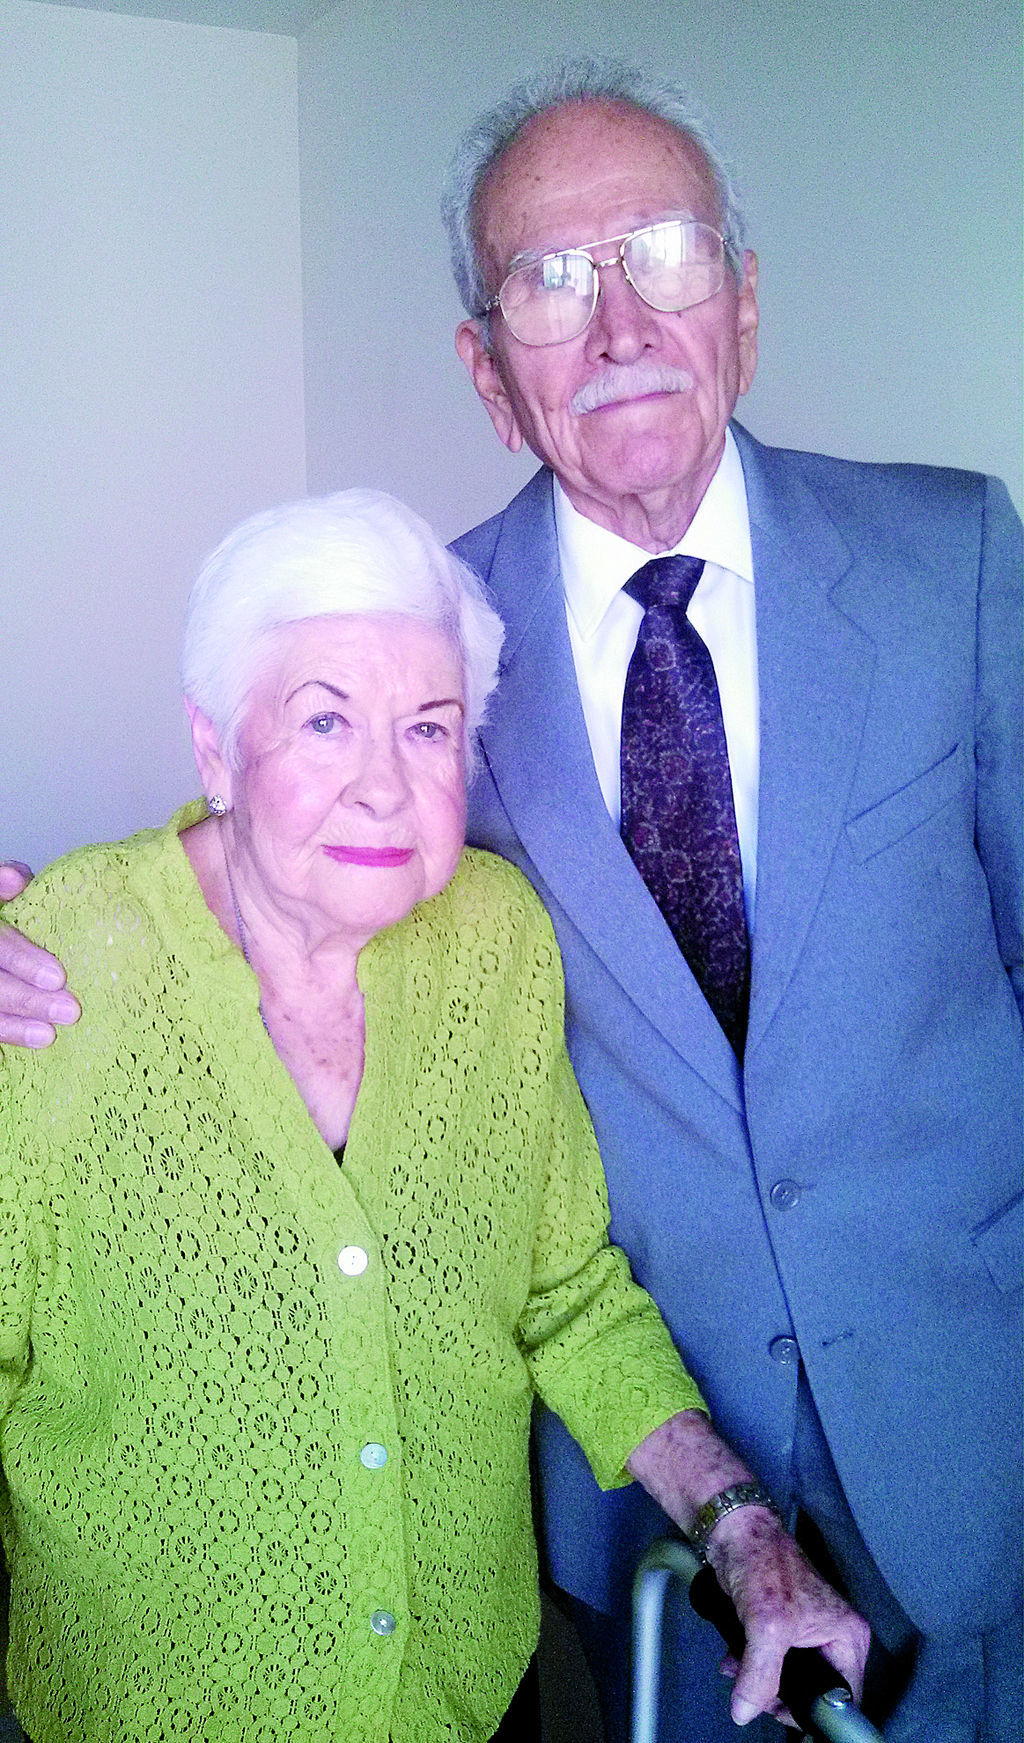   Sra. Hilda Elva Vázquez Padilla y Sr. Leonardo González Morales celebraron el 30 de julio del 2015 su 60 aniversario de bodas.
